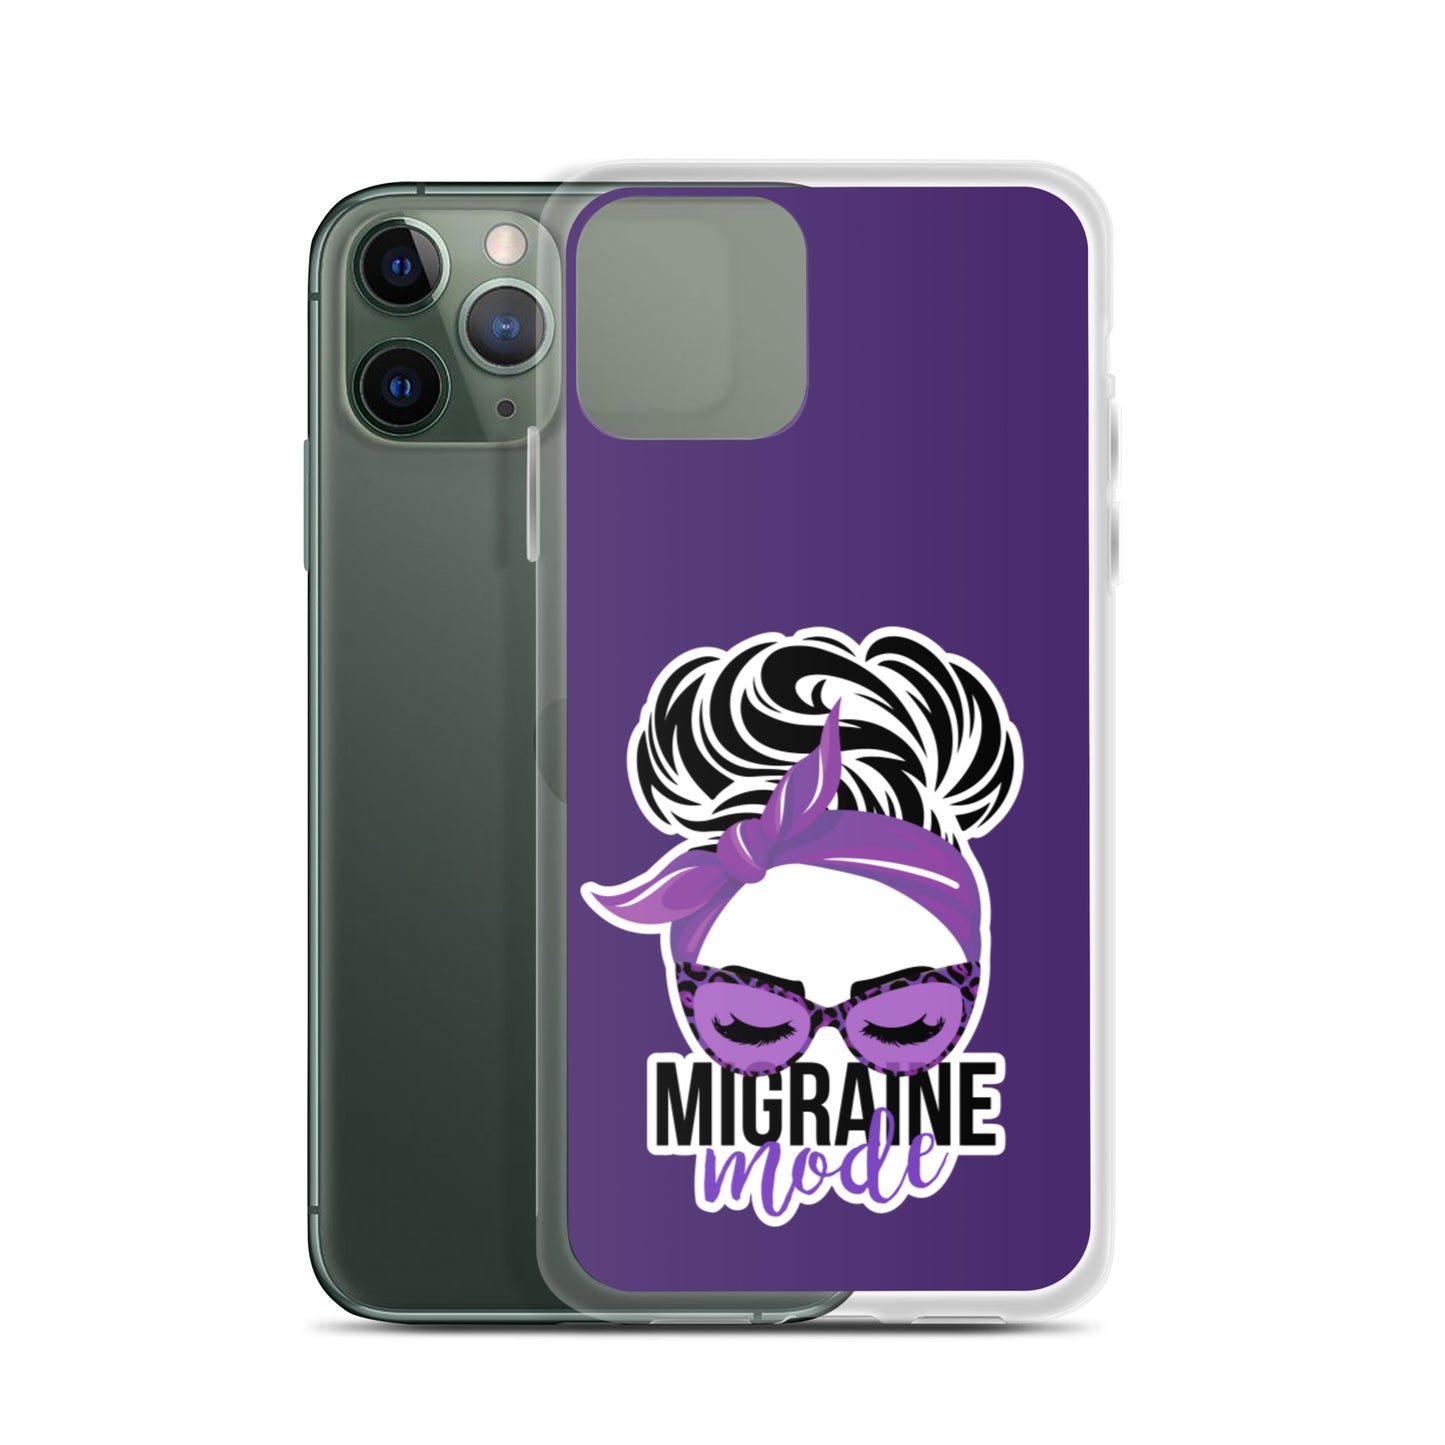 Migraine Mode iPhone Case